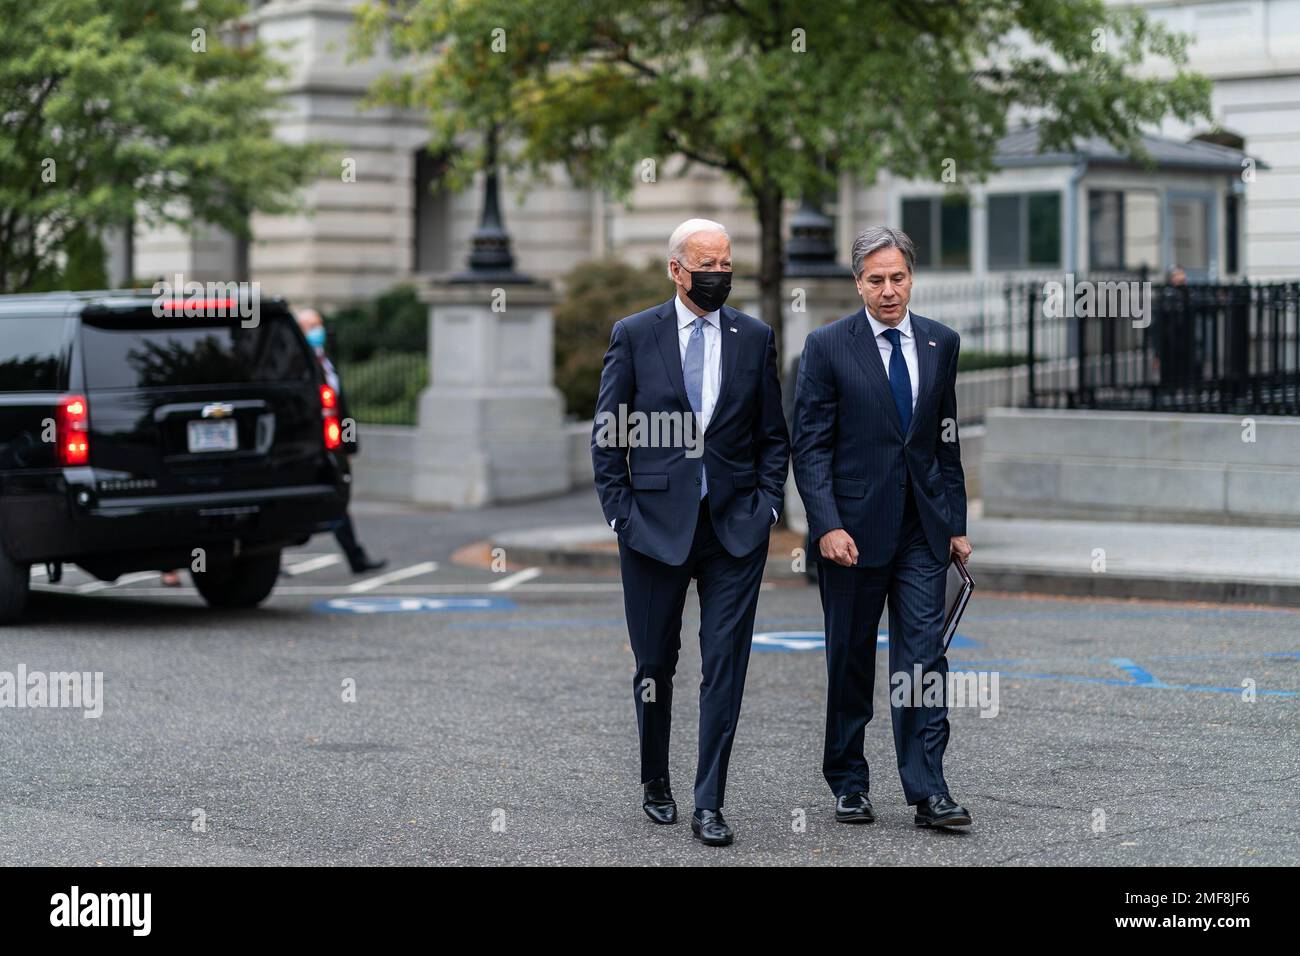 Reportage: Le président Joe Biden marche avec le secrétaire d'État Antony Blinken de l'autre côté de l'avenue de l'exécutif ouest à la Maison Blanche, mardi, 12 octobre 2021 Banque D'Images